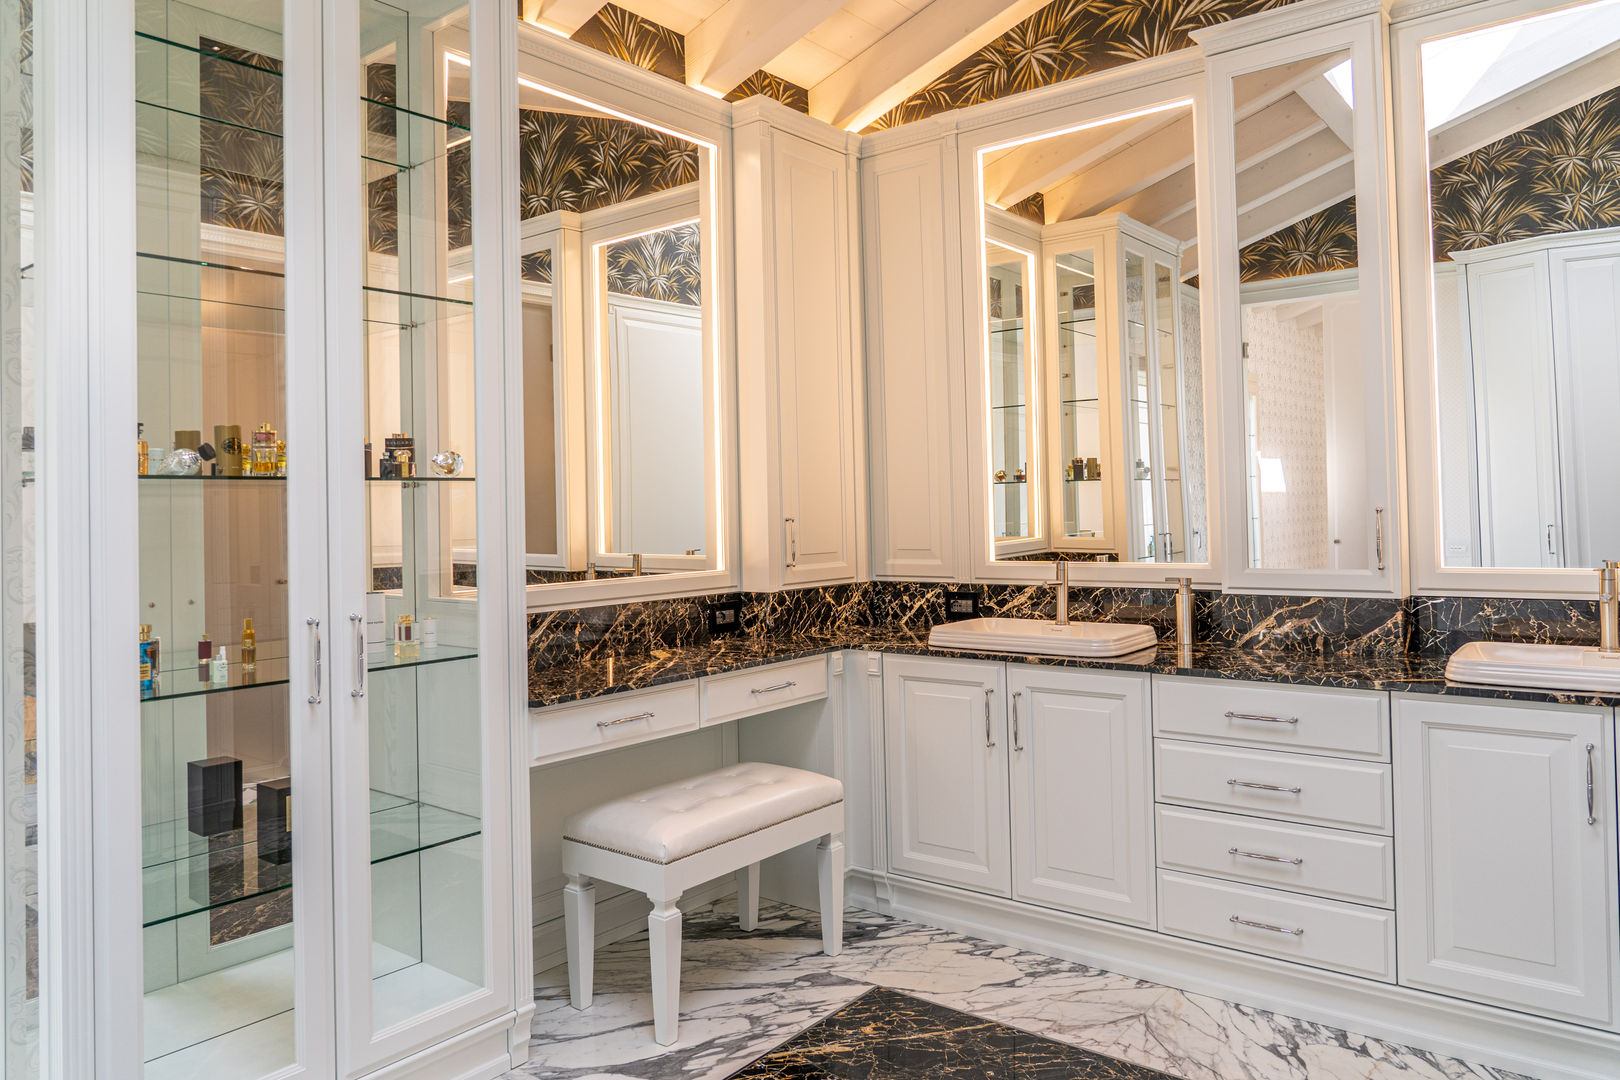 Villa rustica - Brummel, Brummel Brummel Ванная комната в рустикальном стиле Твердая древесина Многоцветный